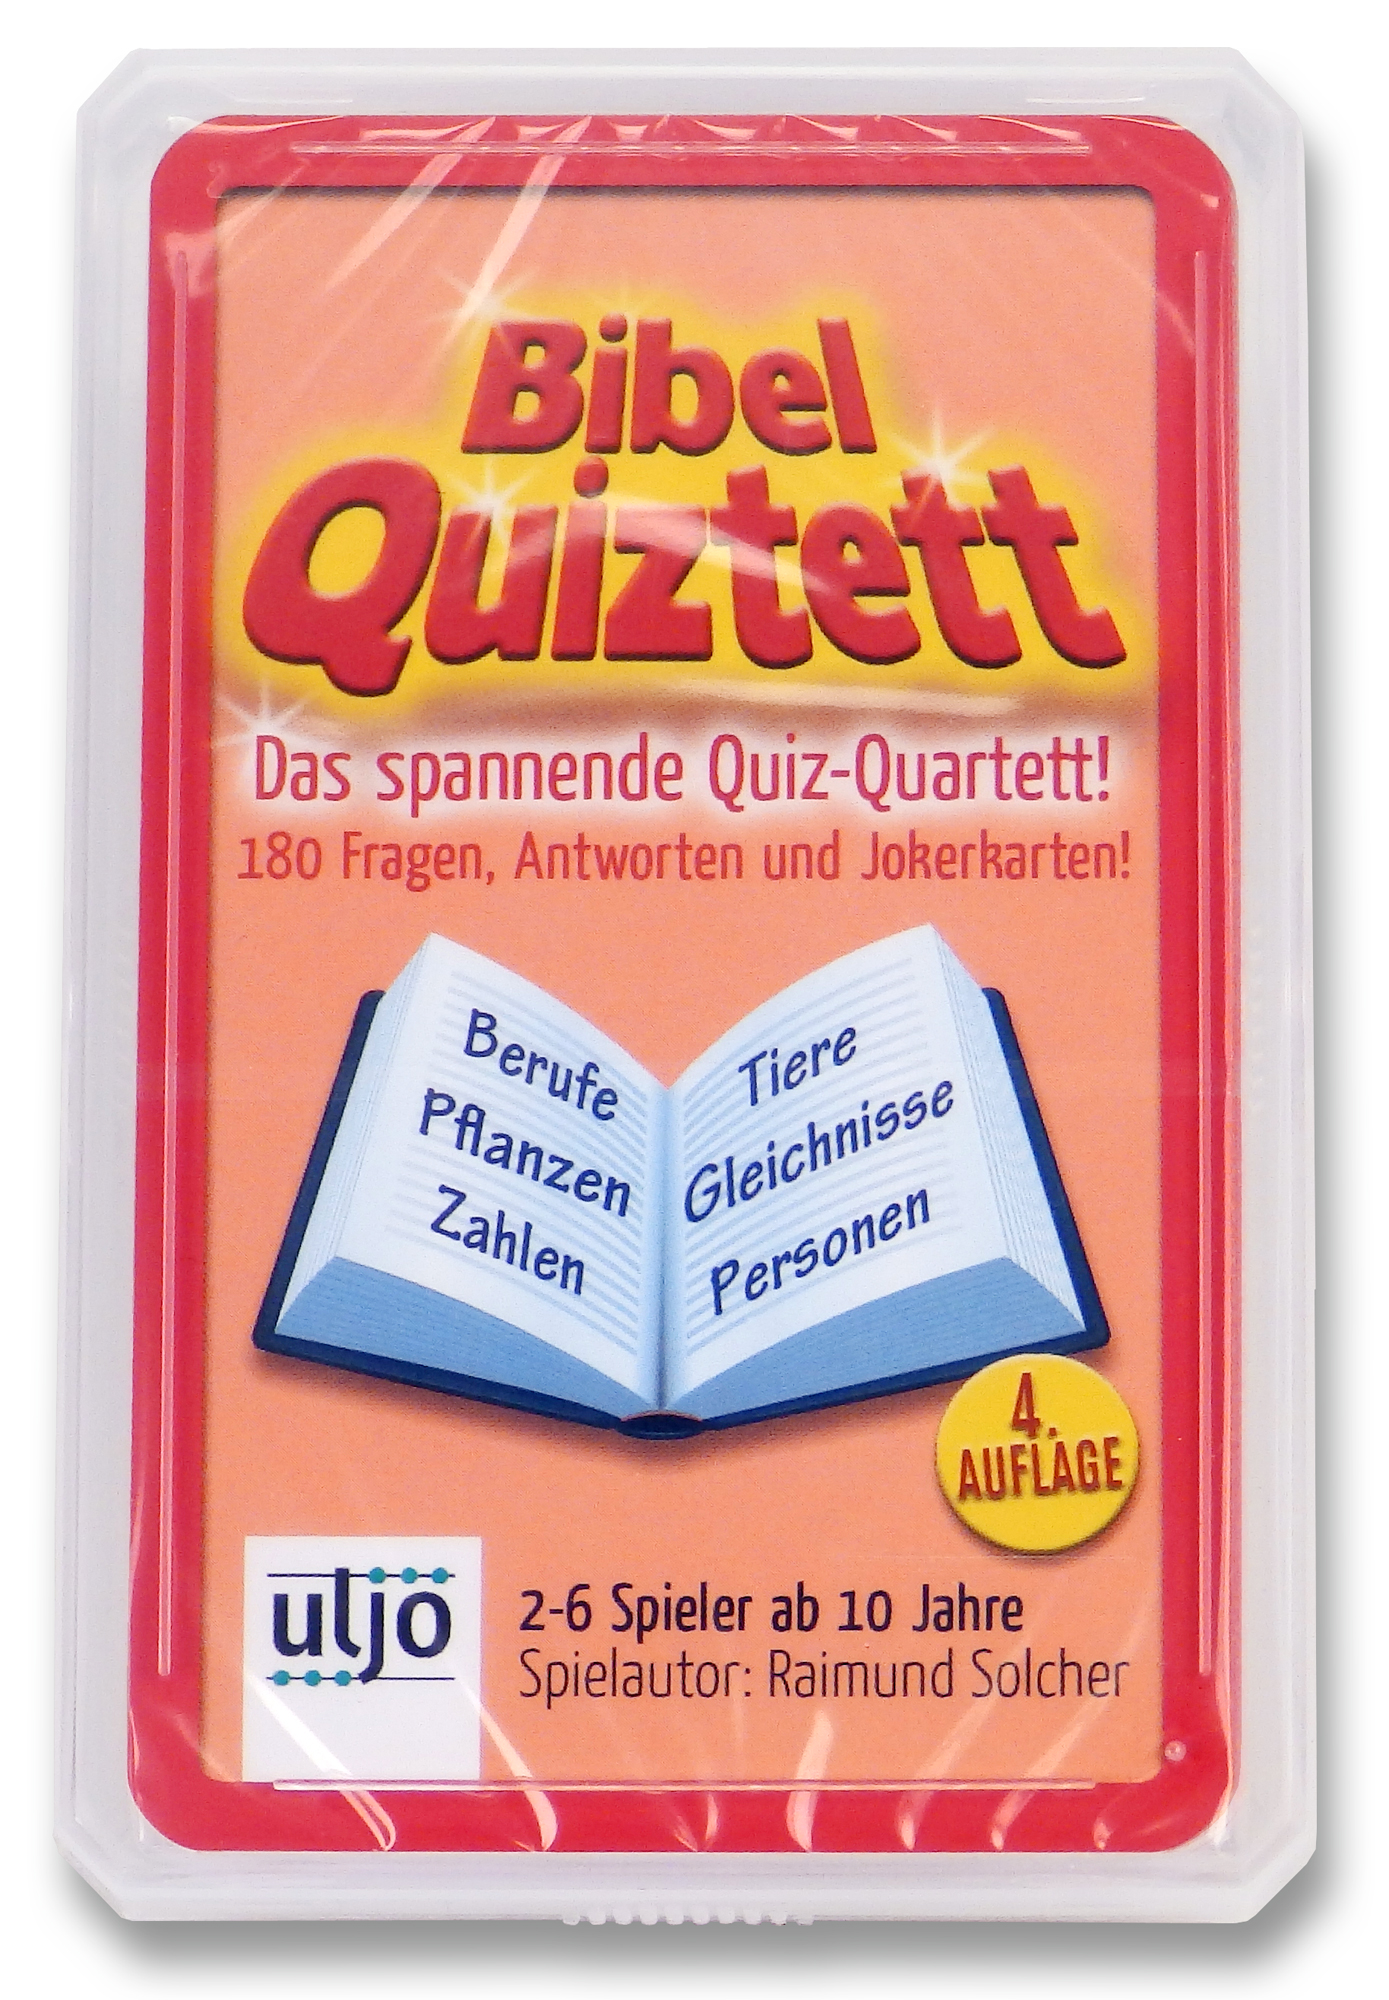 Bibel-Quiztett